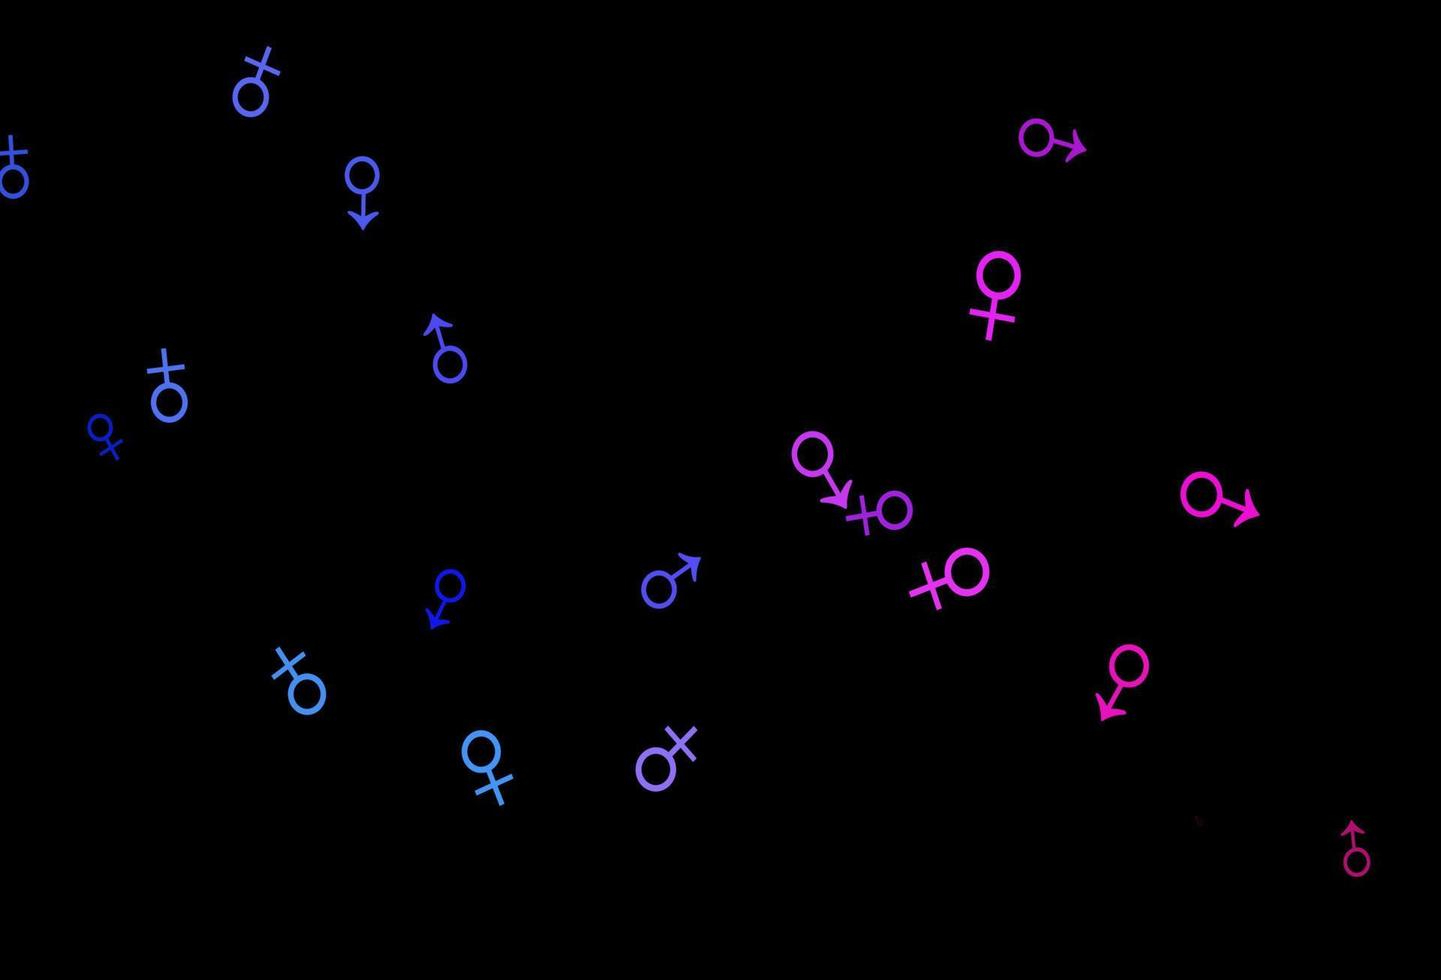 trama vettoriale blu scuro, rosso con icone maschili e femminili.